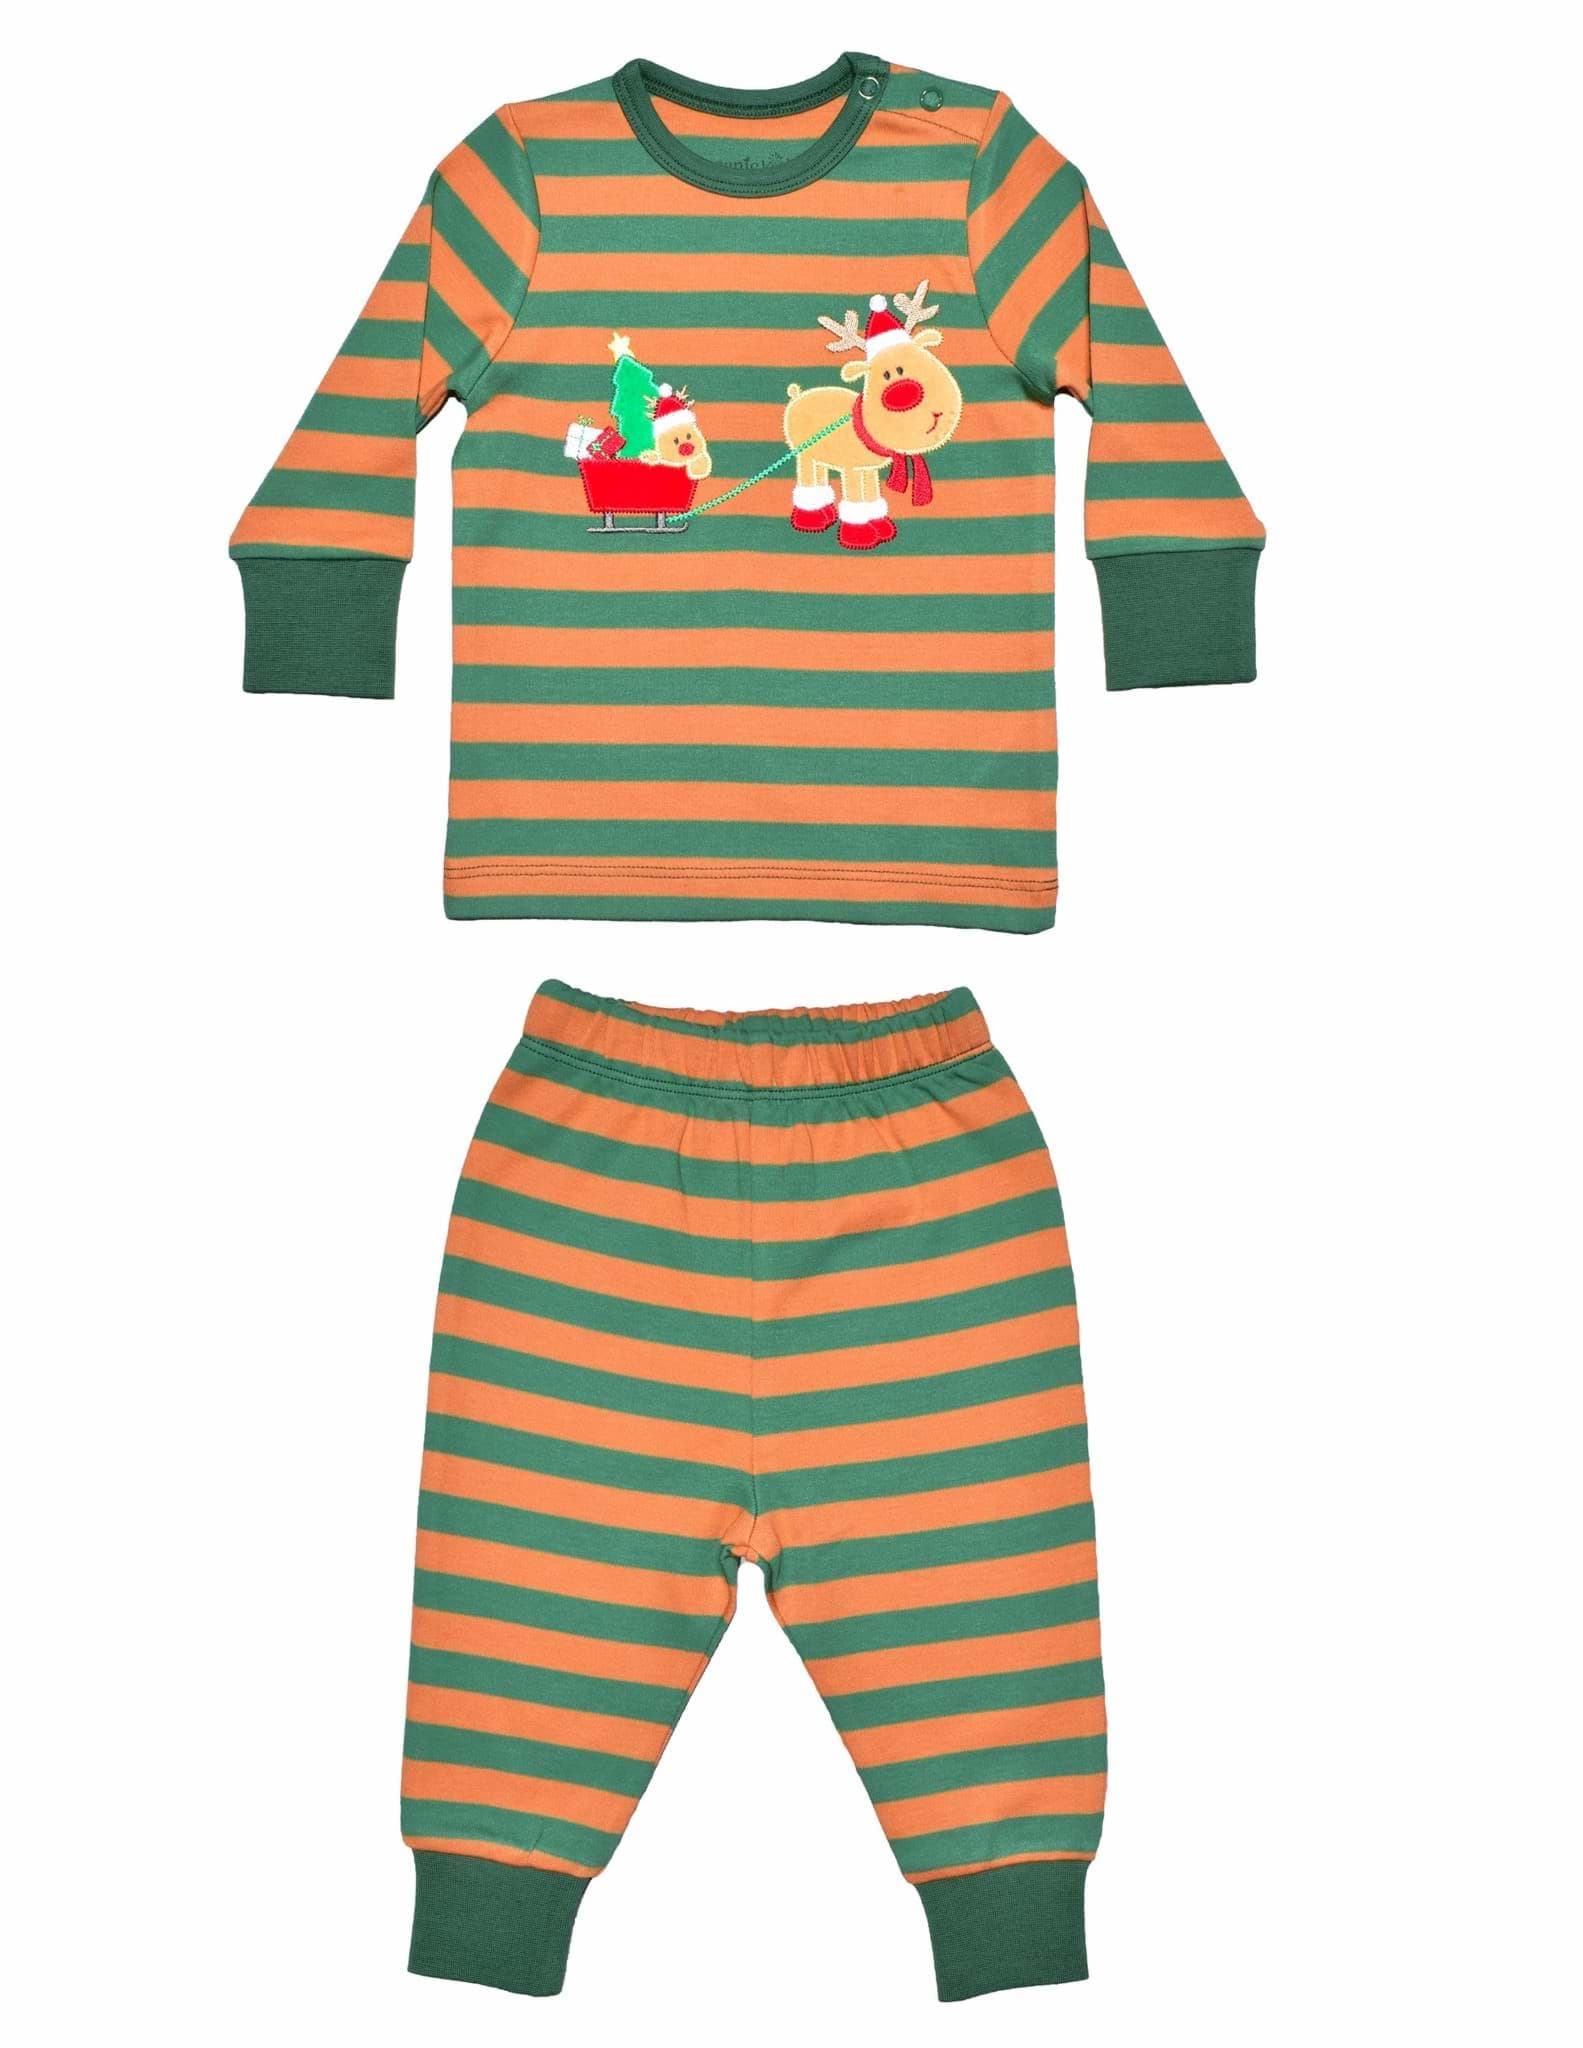 Reindeer Bebek Pijama Takımı resmi